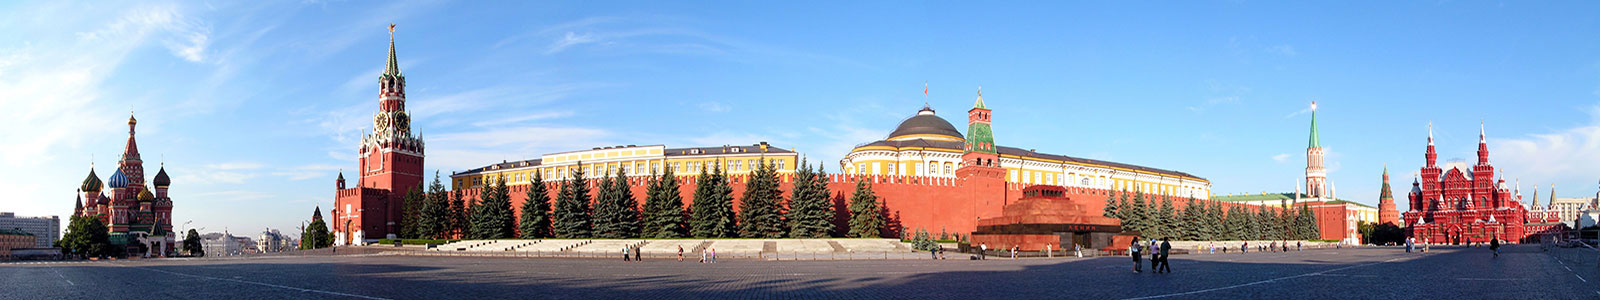 №1199 - Москва, Кремль, Красная площадь